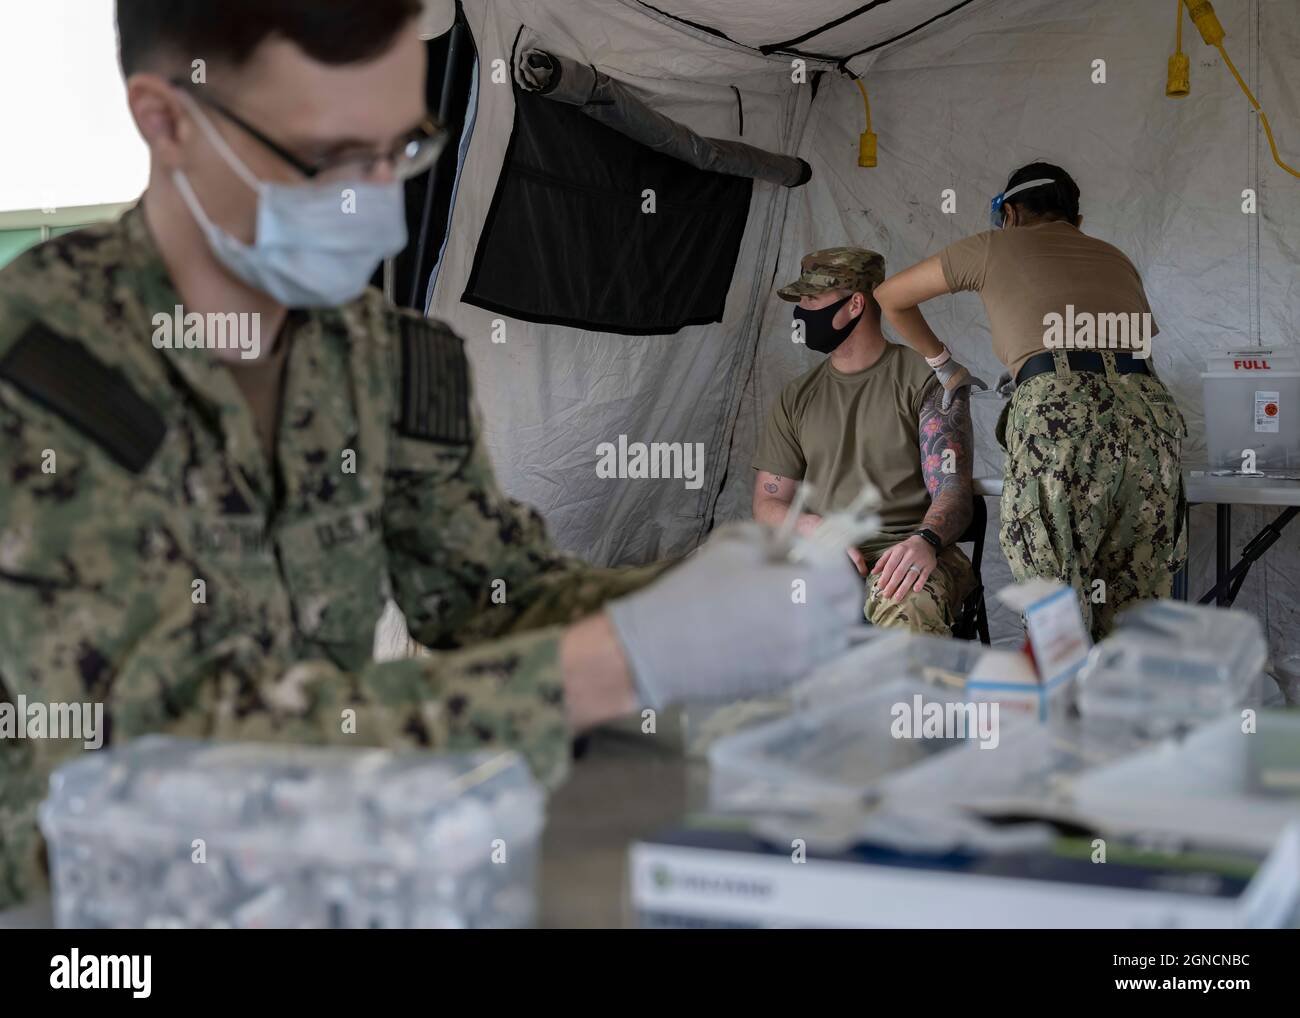 CAMP FOSTER, Japon (janv 27, 2021) l'Hospitalman Dillon Bothwell, à gauche, prépare des seringues comme l'apprenti Hospitalman Samantha Iglesias-Martinez, à droite, tous deux affectés à l'hôpital naval américain d'Okinawa, administre le vaccin Moderna COVID-19 à l'hôpital naval américain d'Okinawa sur le Camp Foster à Okinawa, au Japon, le 27 janvier 2021. (É.-U. Photo de la marine par le spécialiste des communications de masse de 1re classe David R. Krigbaum) 210127-N-QY759-0014 Banque D'Images